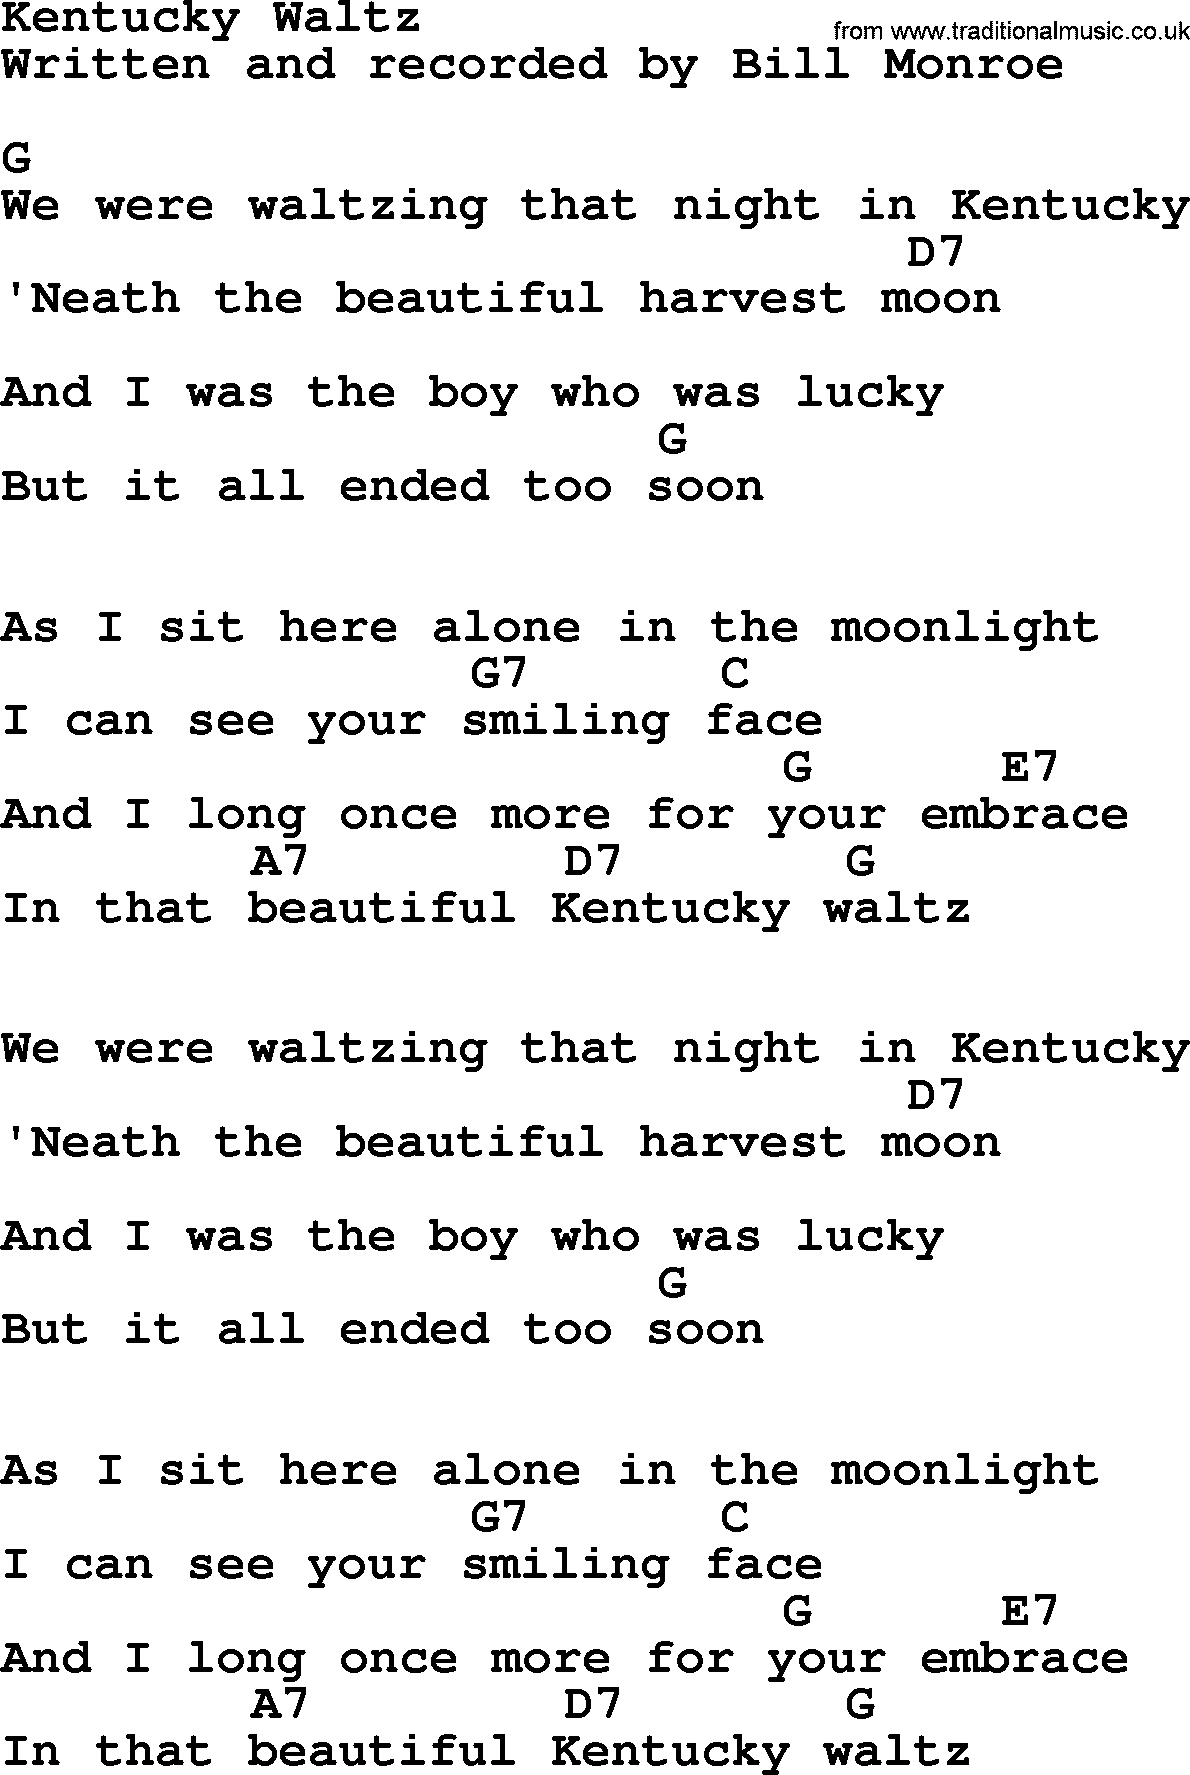 Bluegrass song: Kentucky Waltz, lyrics and chords